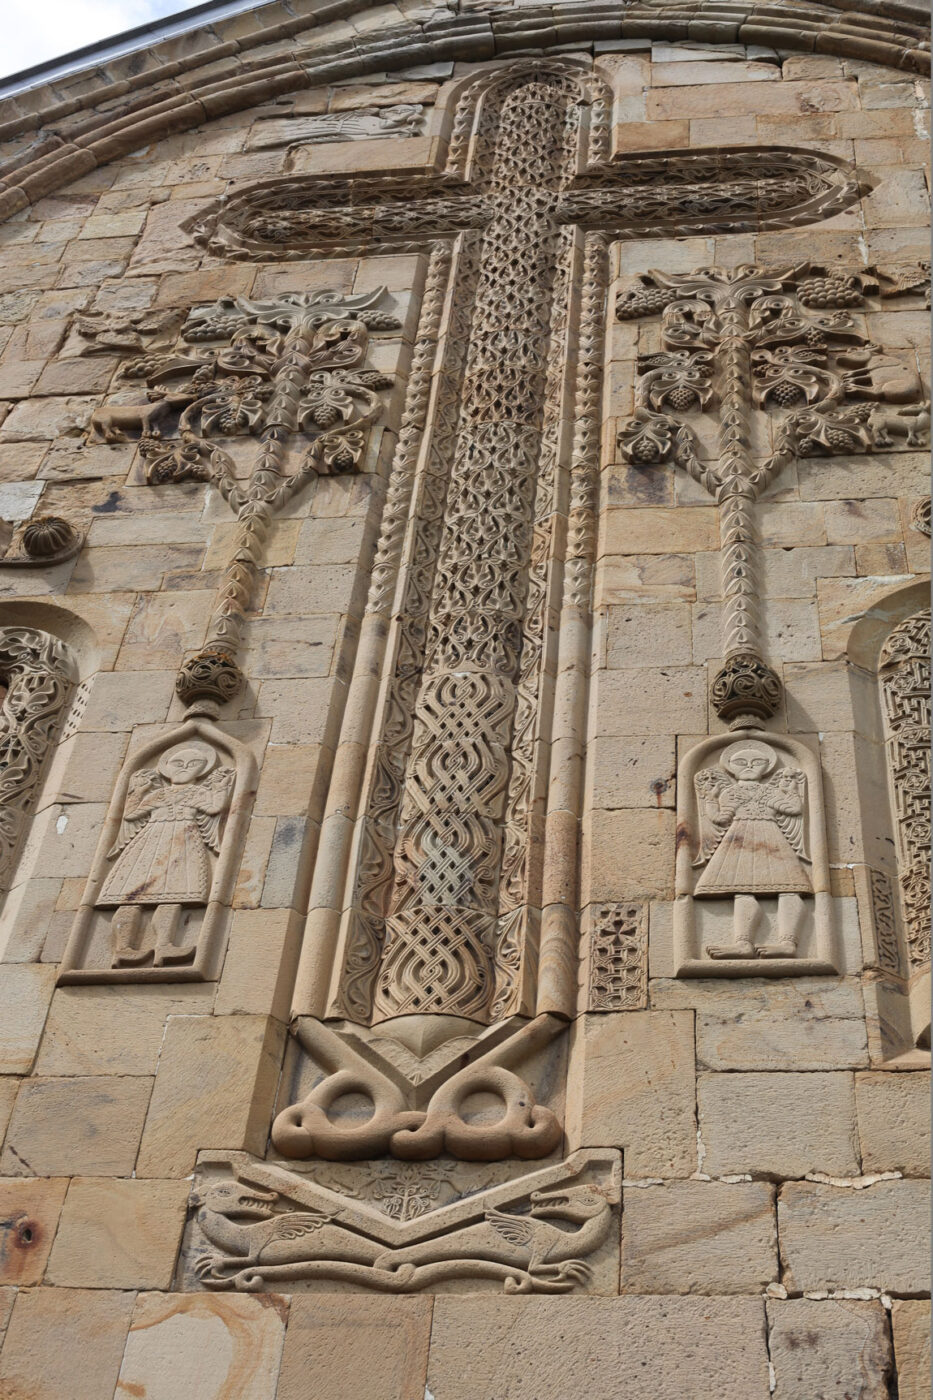 Prachtige versierd kruis met aan beide zijden de levensboom op de kerk van Ananuri